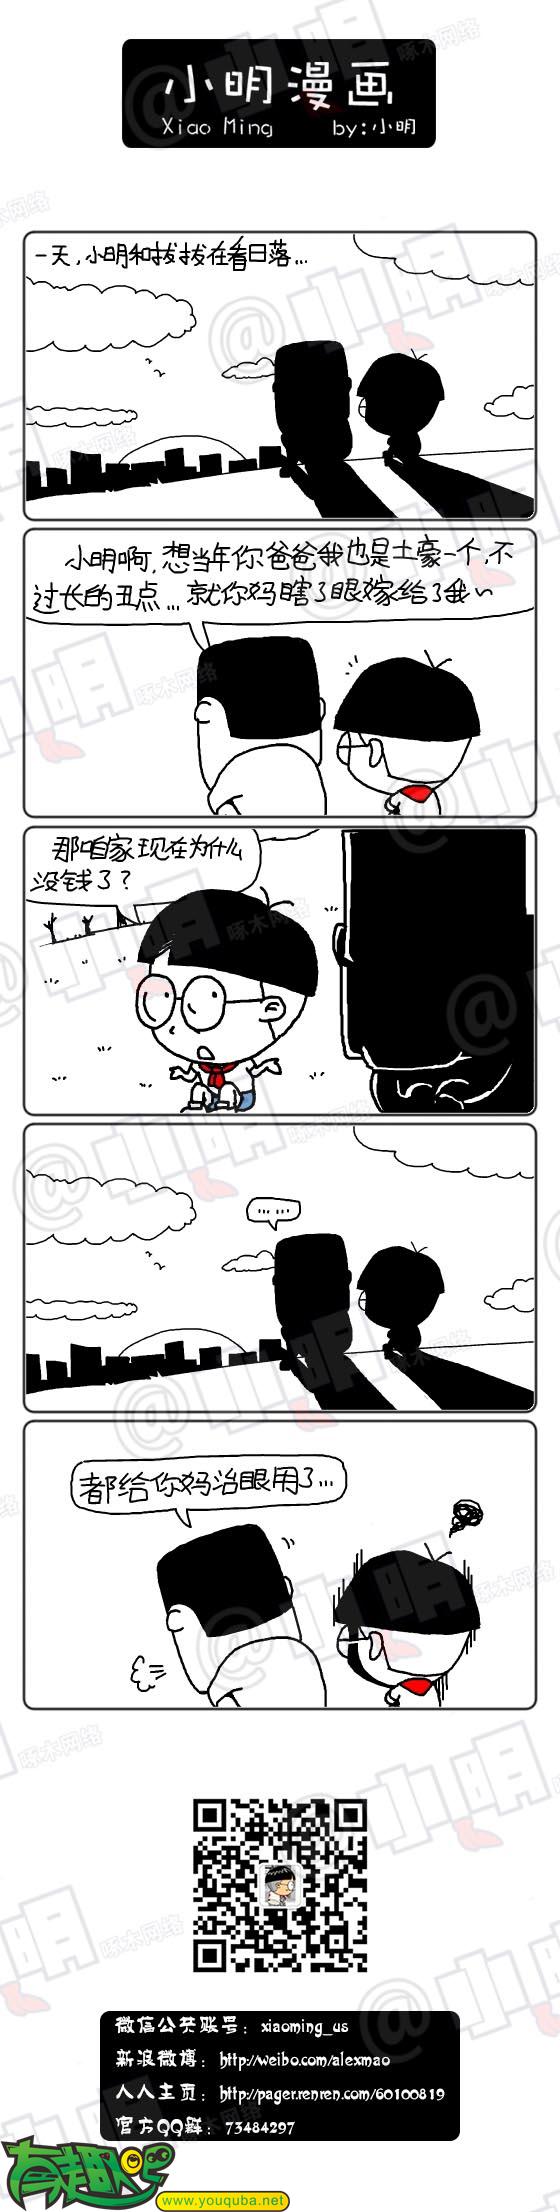 小明系列漫画：治眼睛